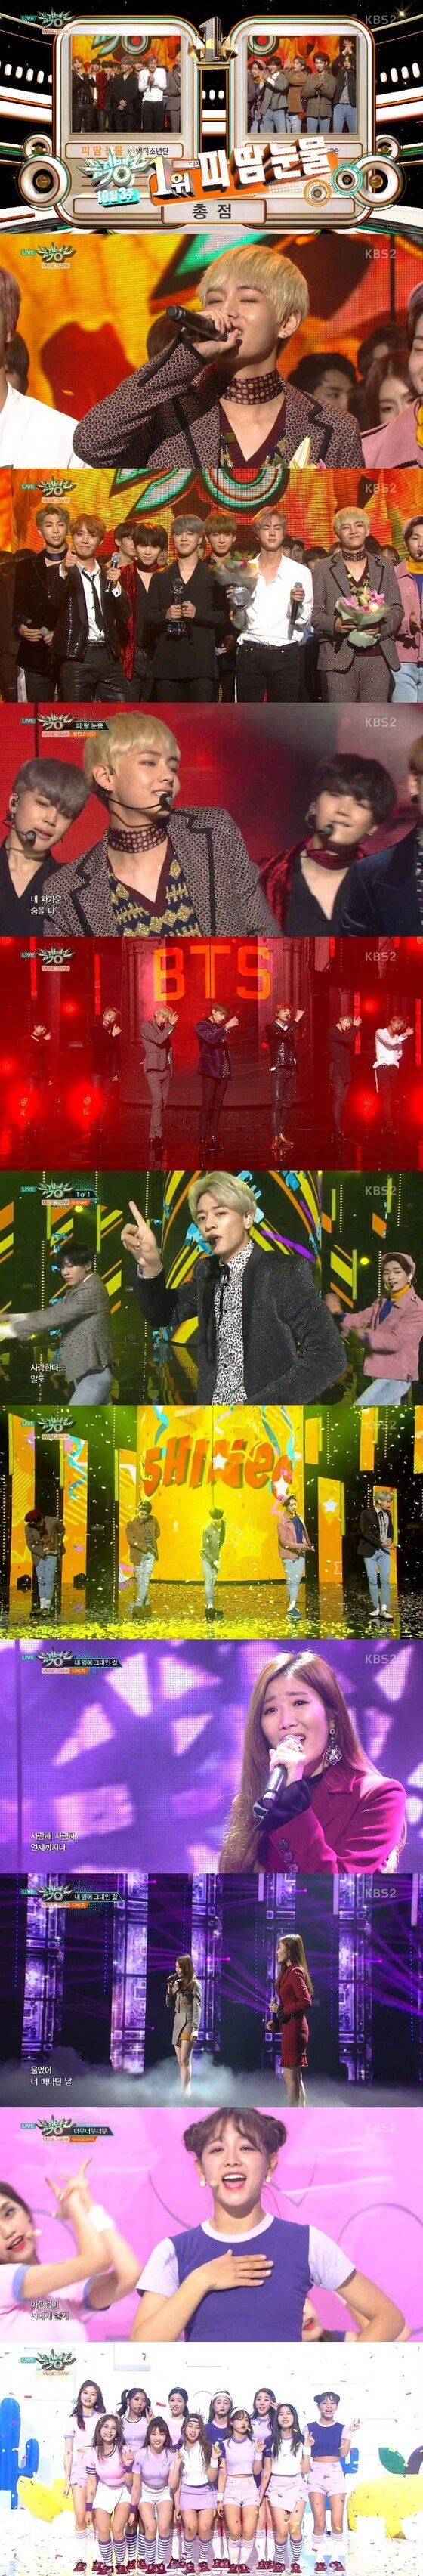 방탄소년단이 '뮤직뱅크' 1위를 차지했다. © News1star / KBS2 '뮤직뱅크' 캡처